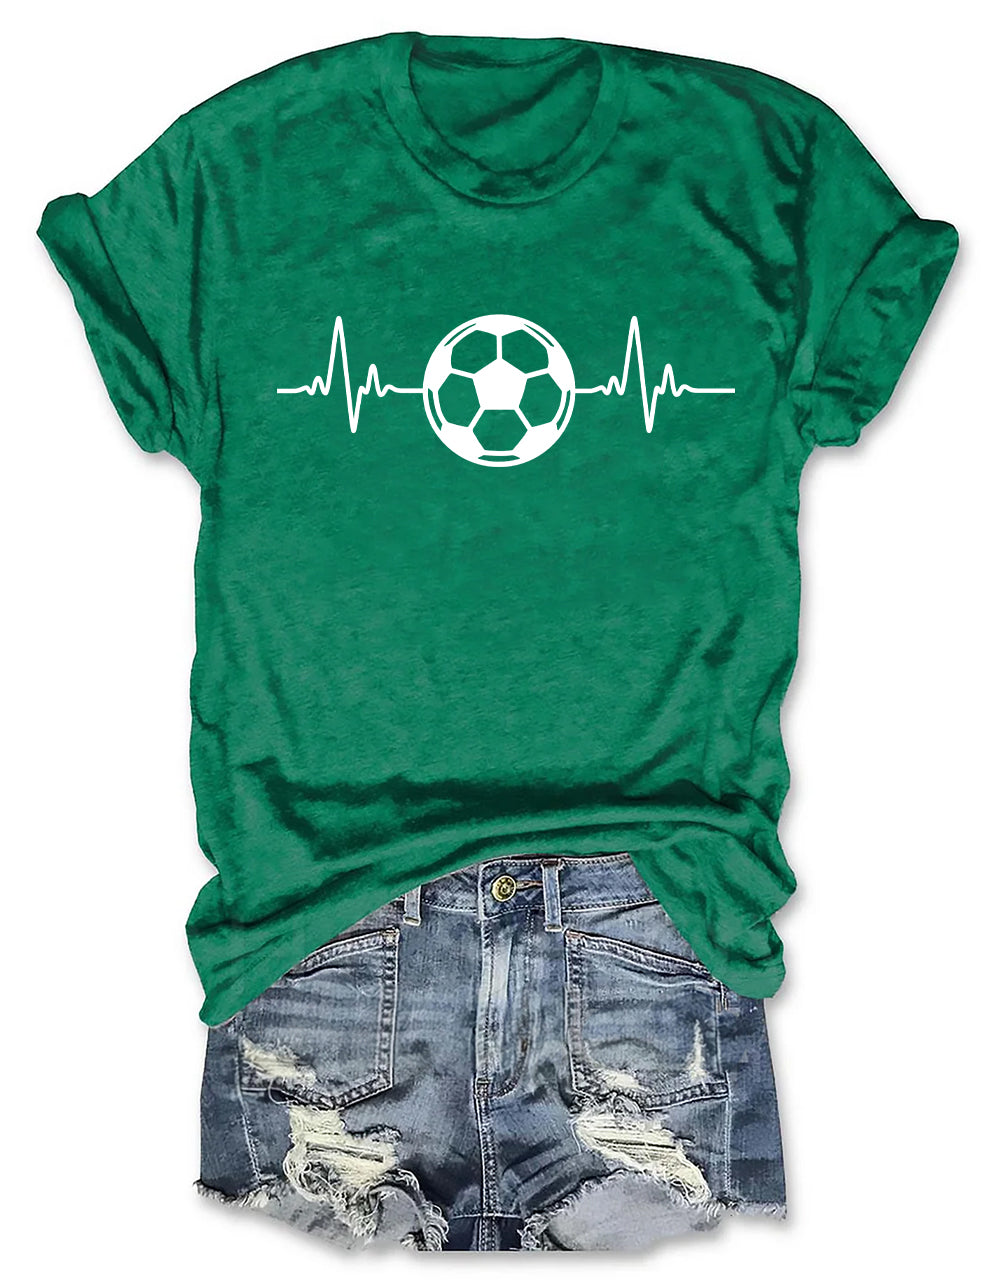 Soccer Lifeline T-shirt